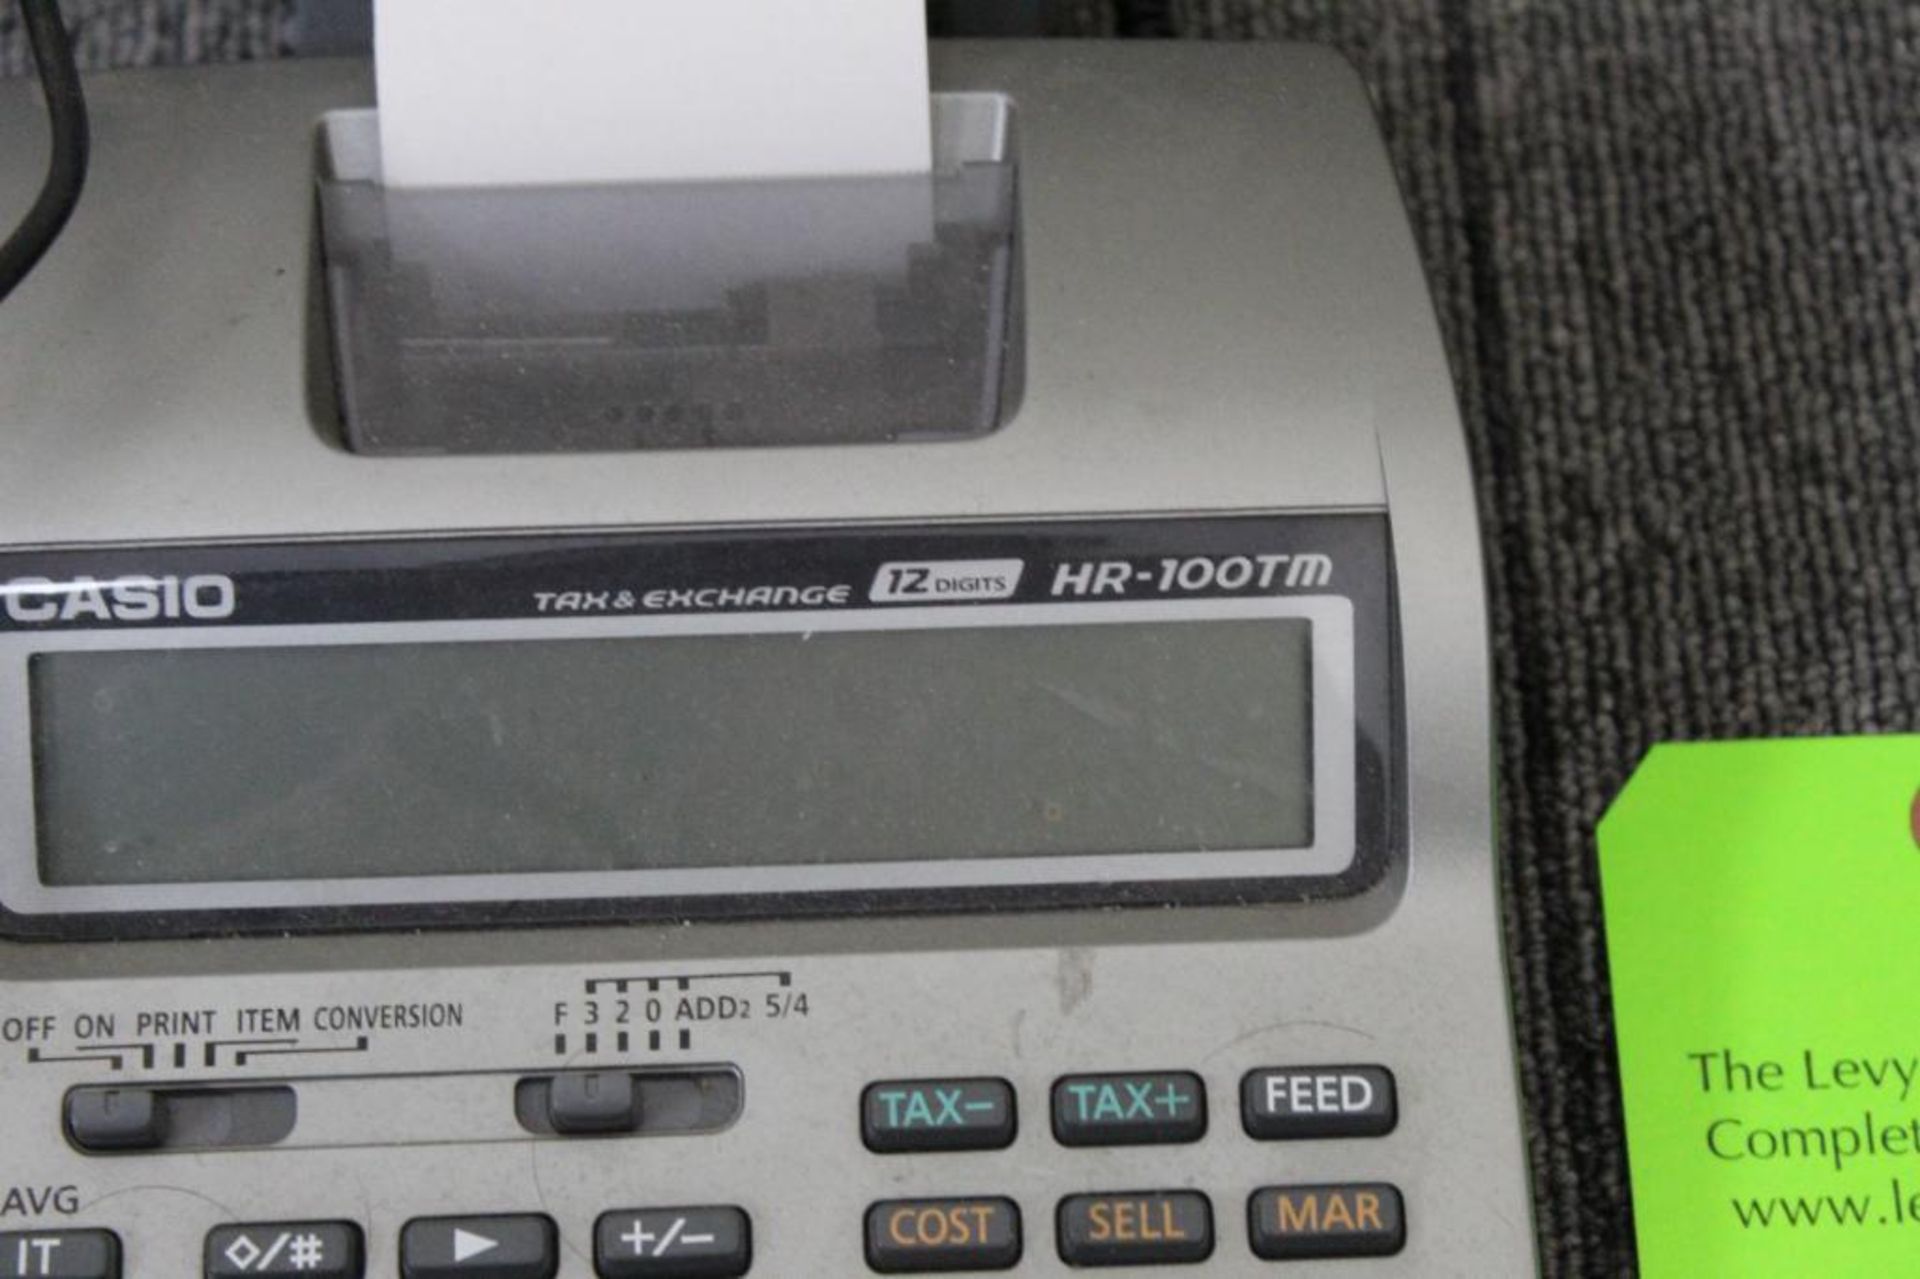 Casio HR-100TM Calculator - Image 2 of 2